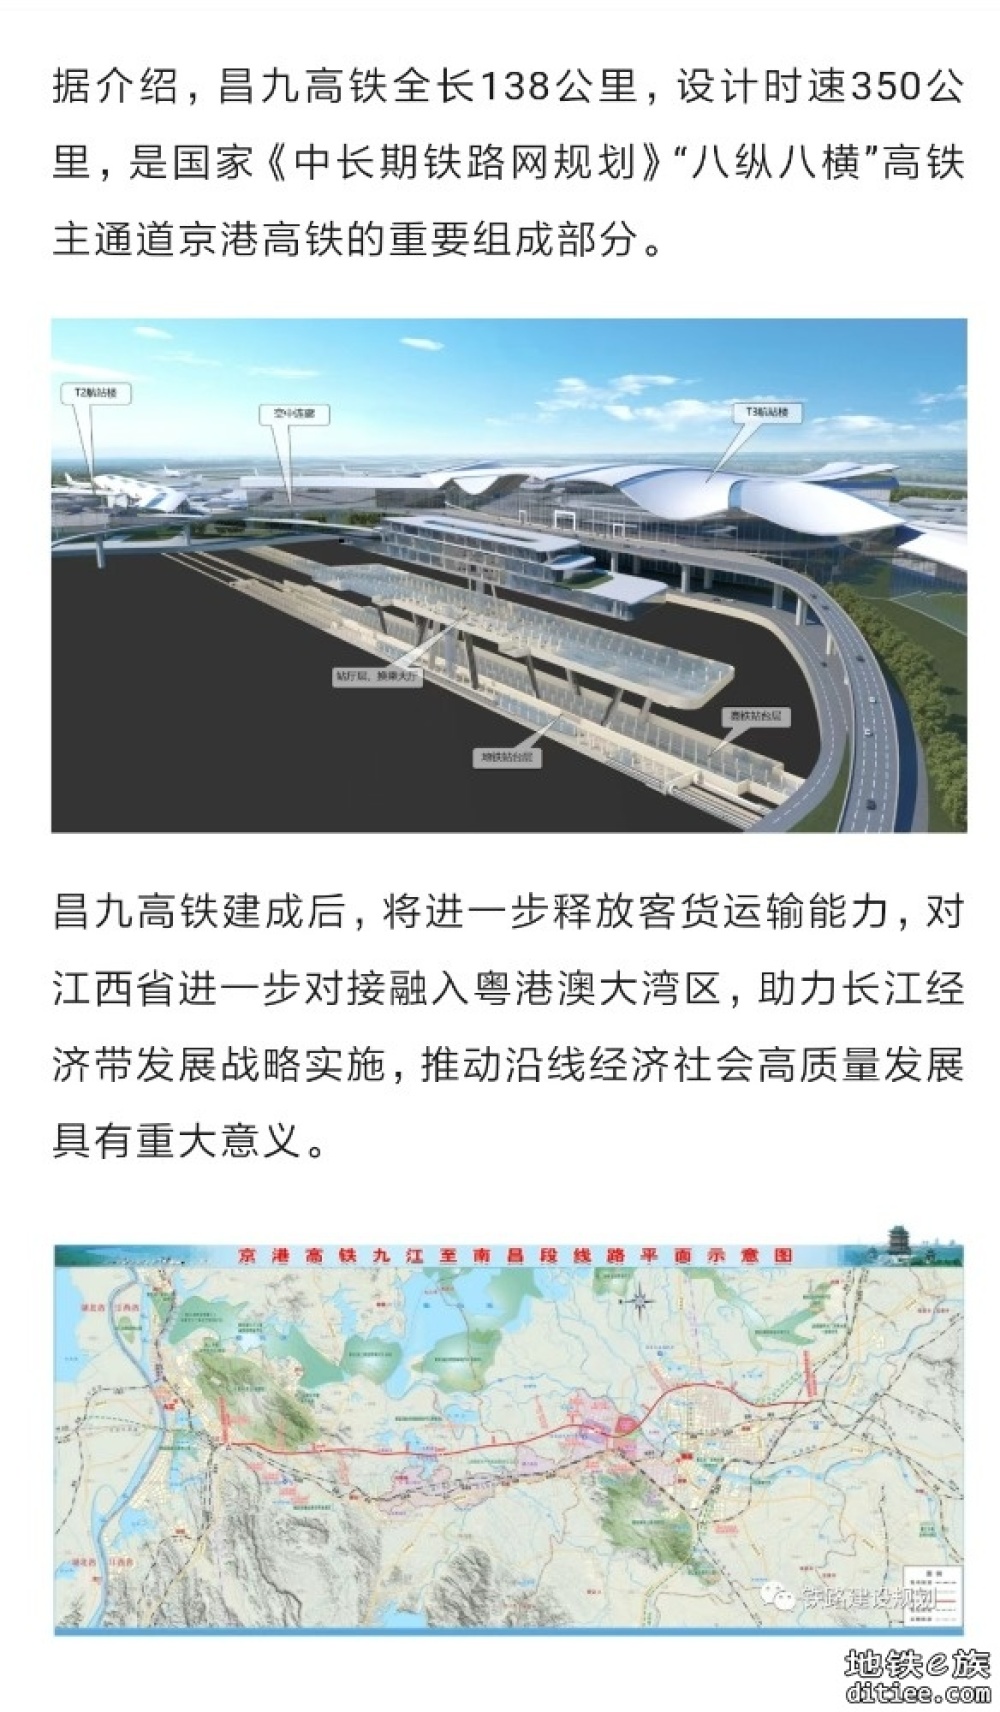 昌九高铁昌北机场1号隧道关键节点顺利贯通！